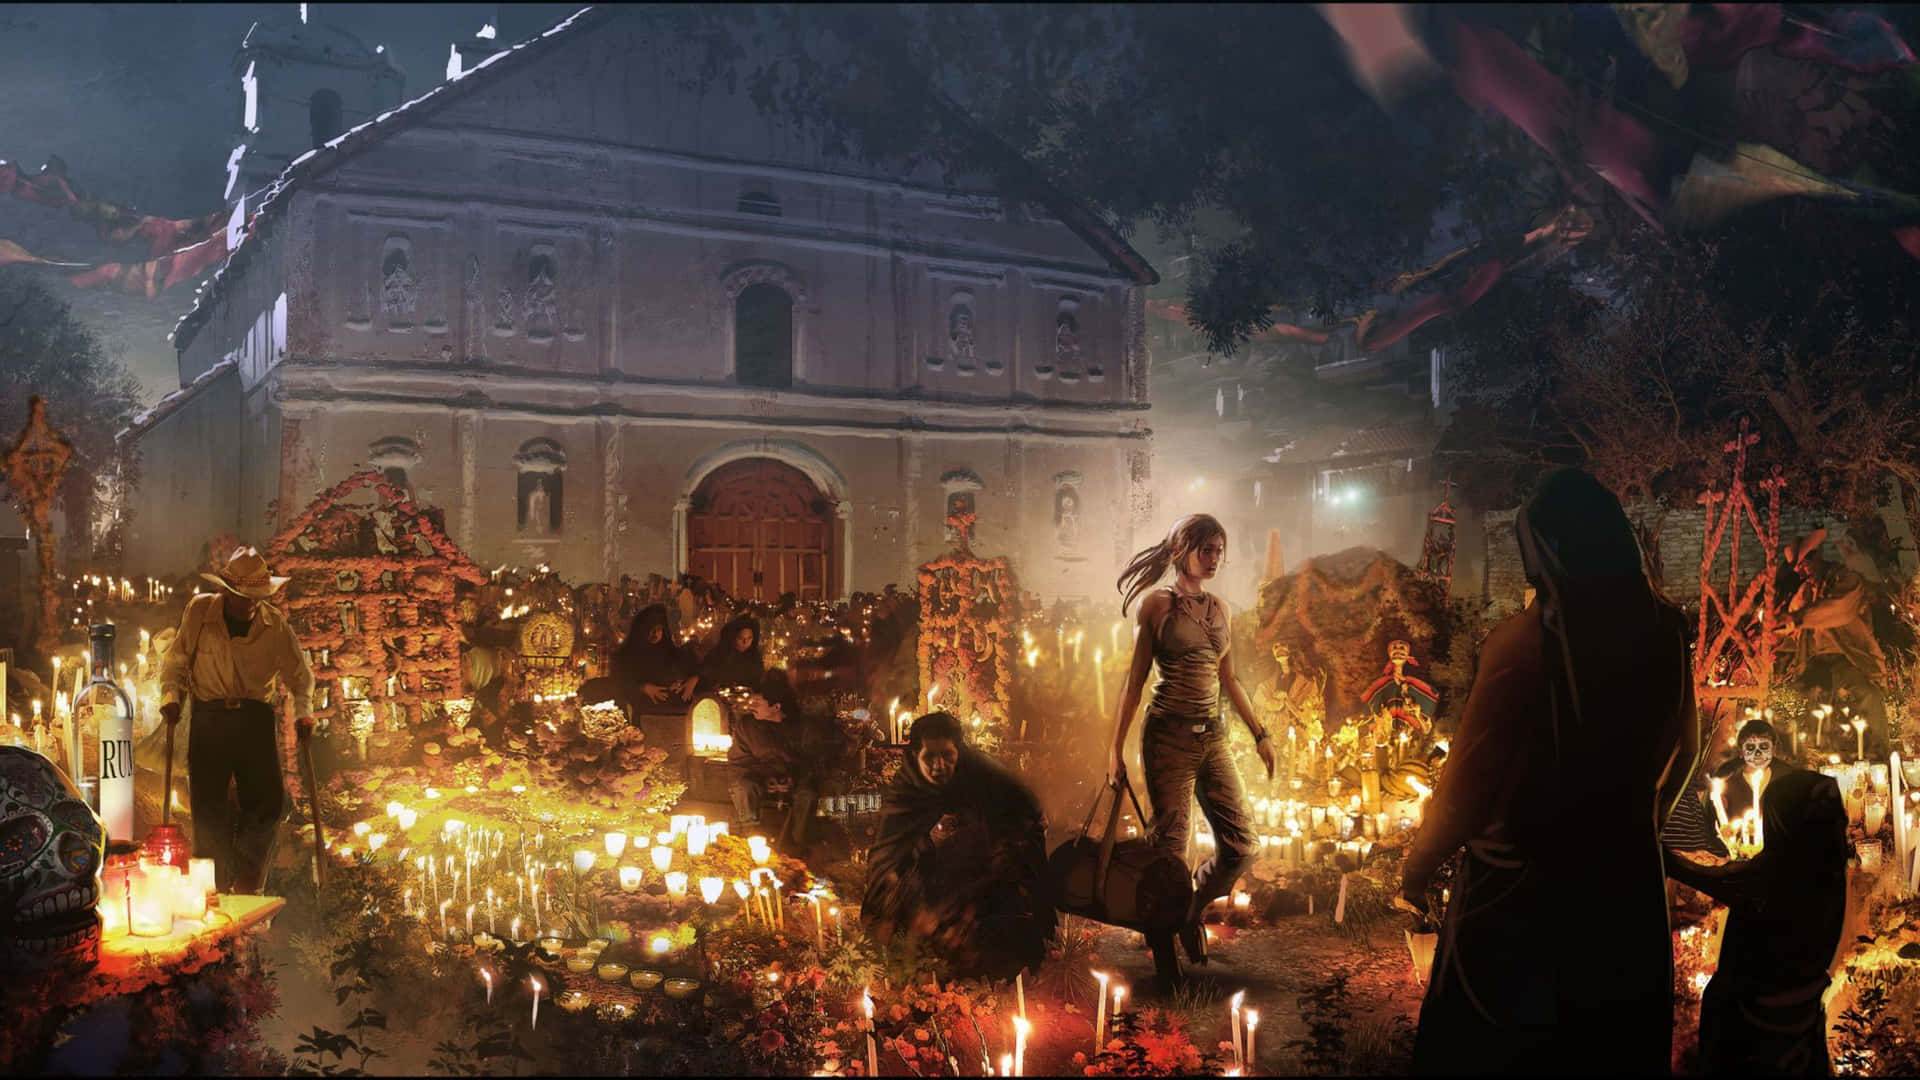 Fondode Pantalla Con Resolución 4k Del Festival De Los Muertos En Shadow Of The Tomb Raider.